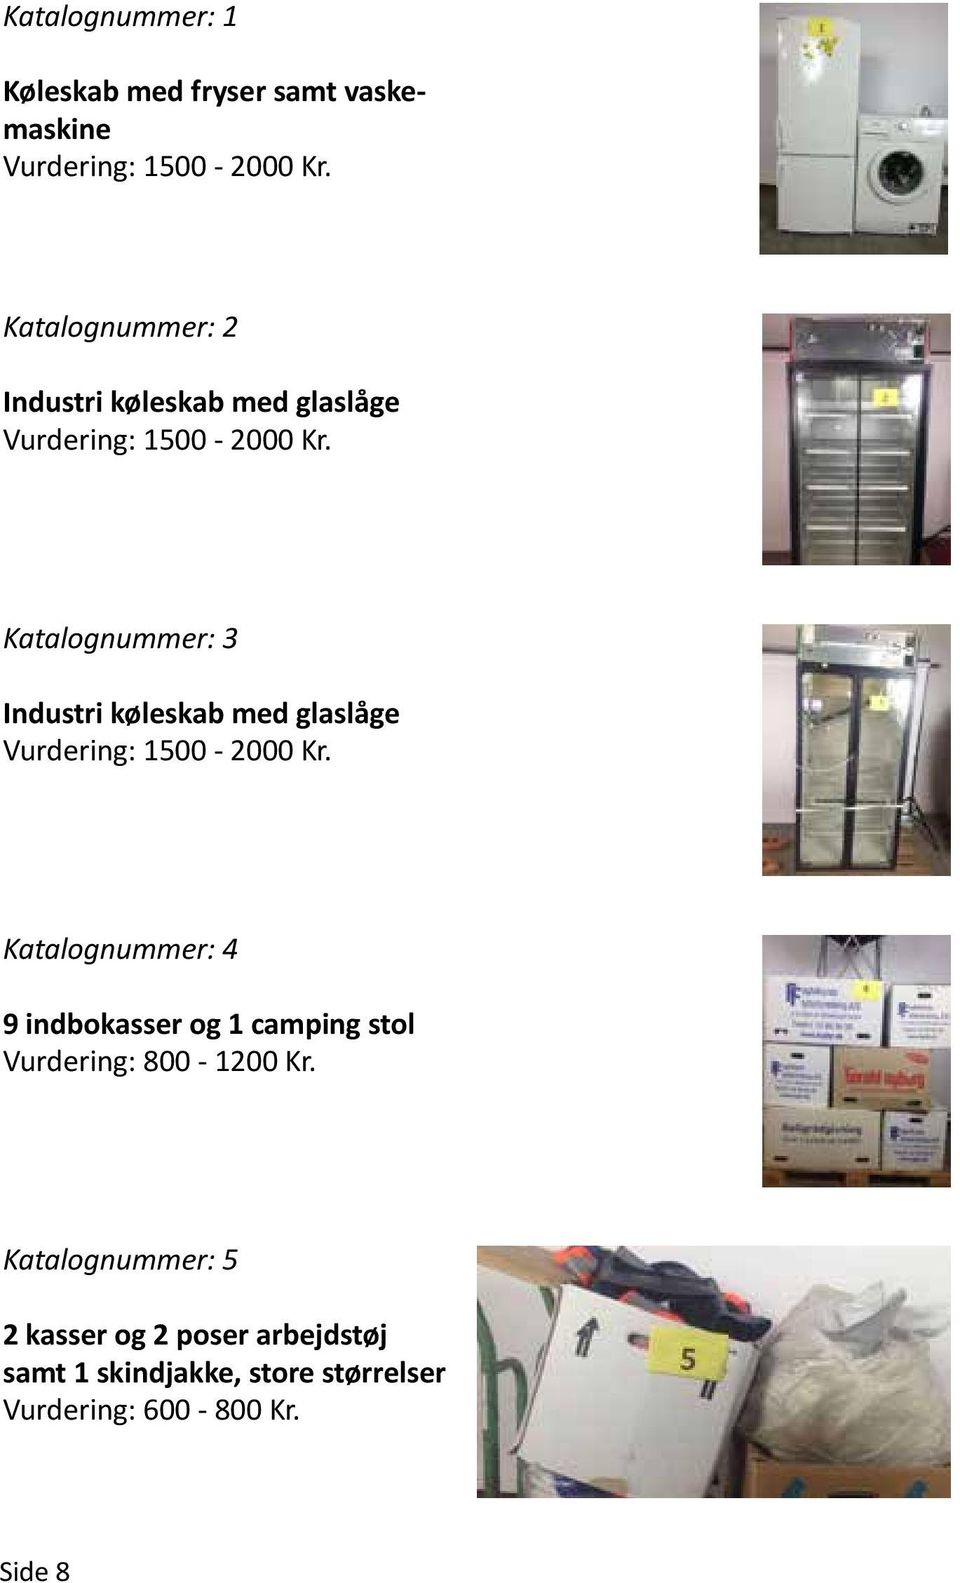 Katalognummer: 3 Industri køleskab med glaslåge Vurdering: 1500-2000 Kr.